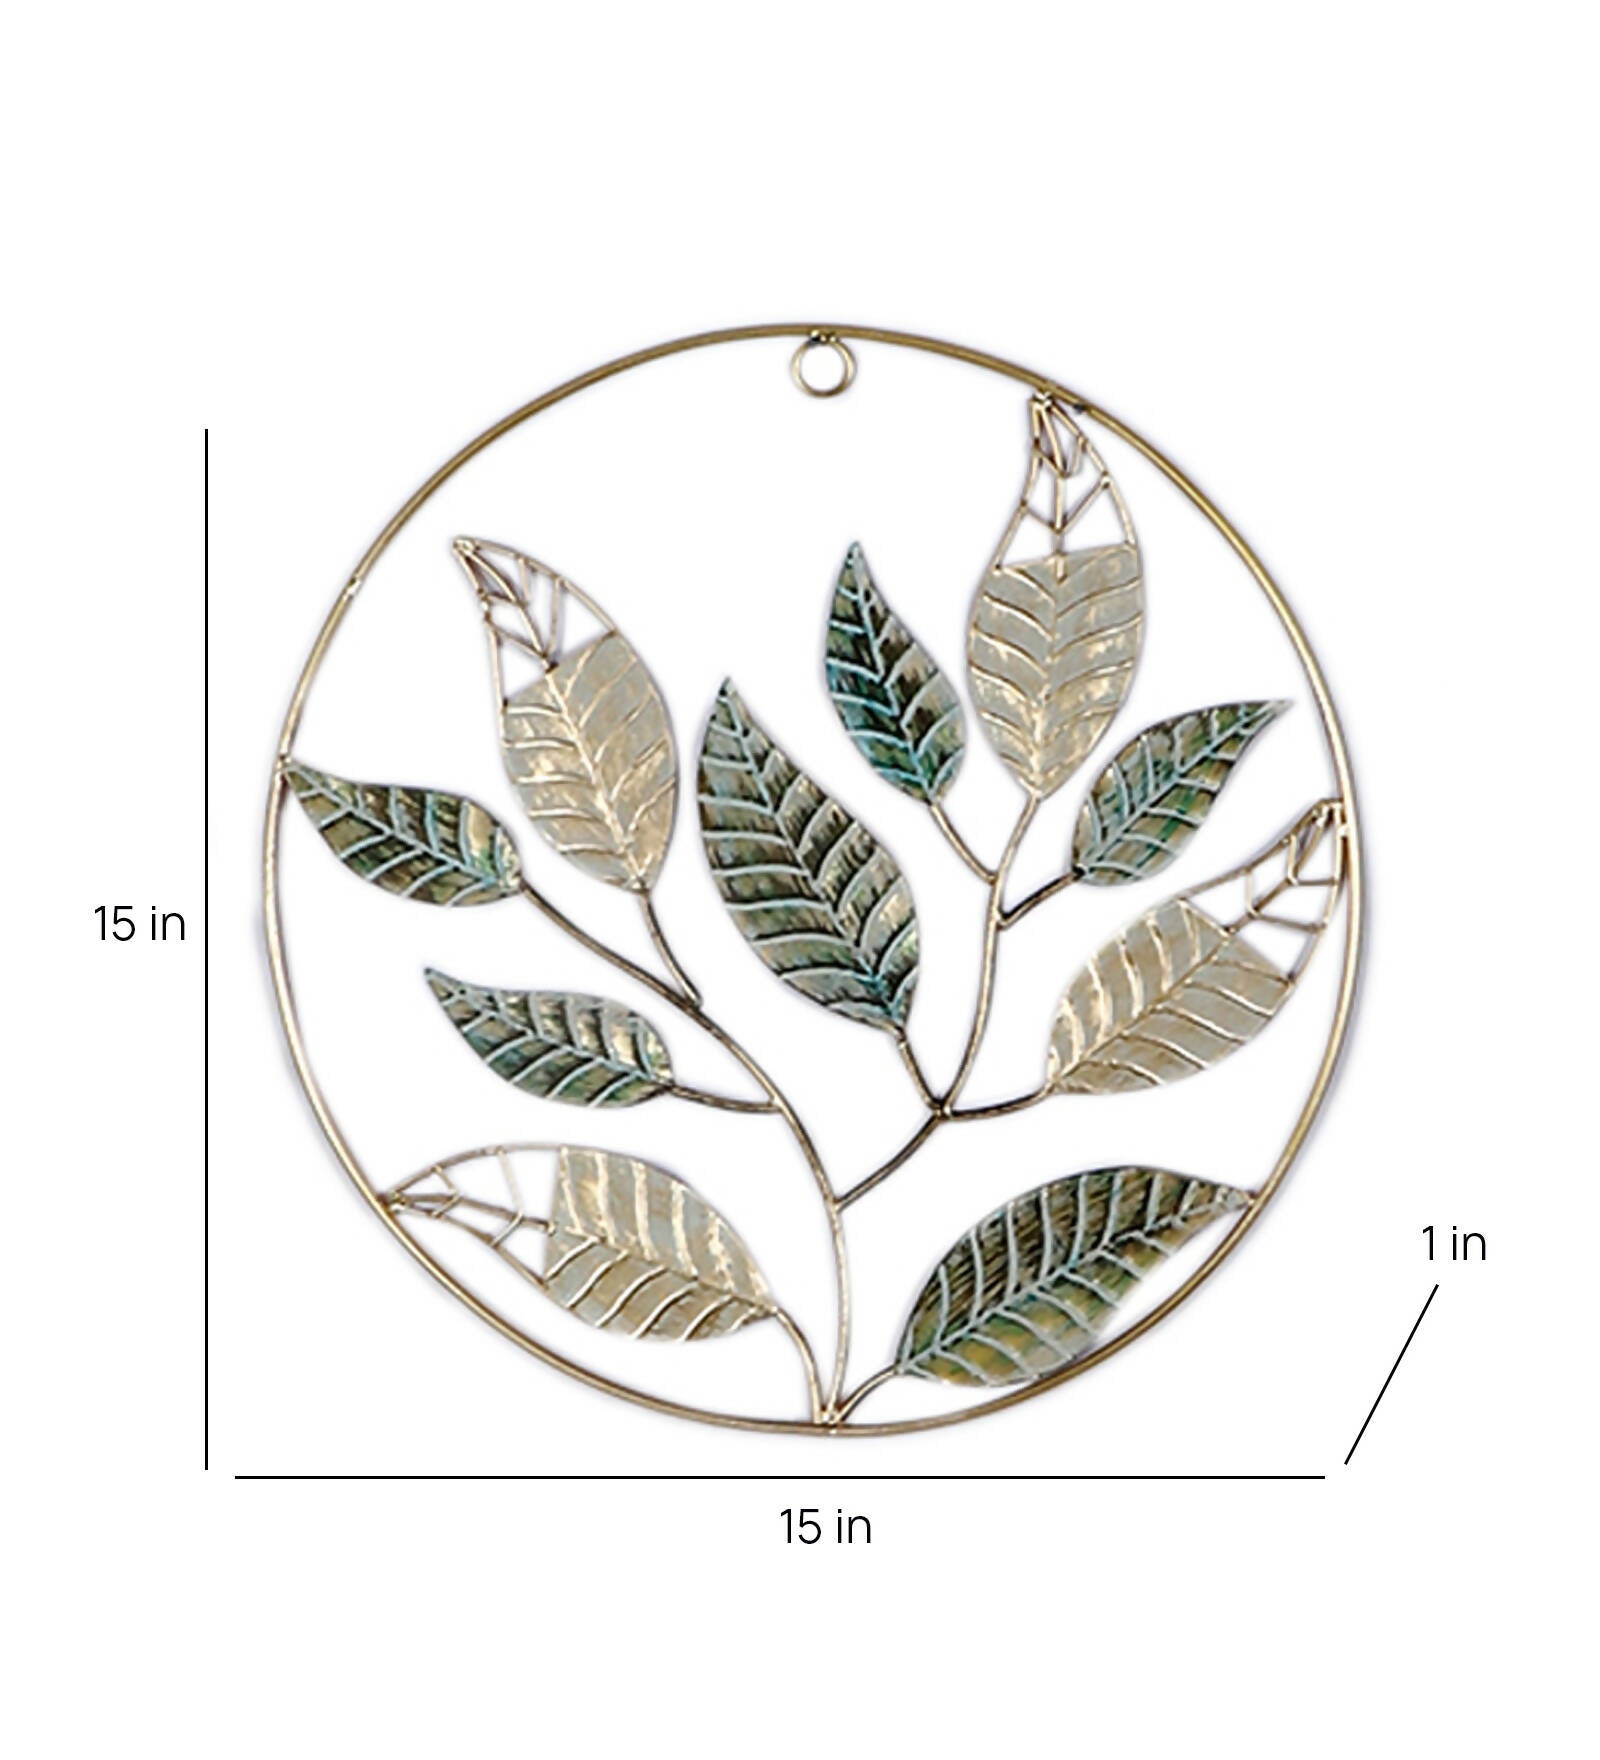 Watercolor Botanical Illustration. Mango Leaf Isolated on White Background  Stock Image - Image of foliage, garden: 250889415